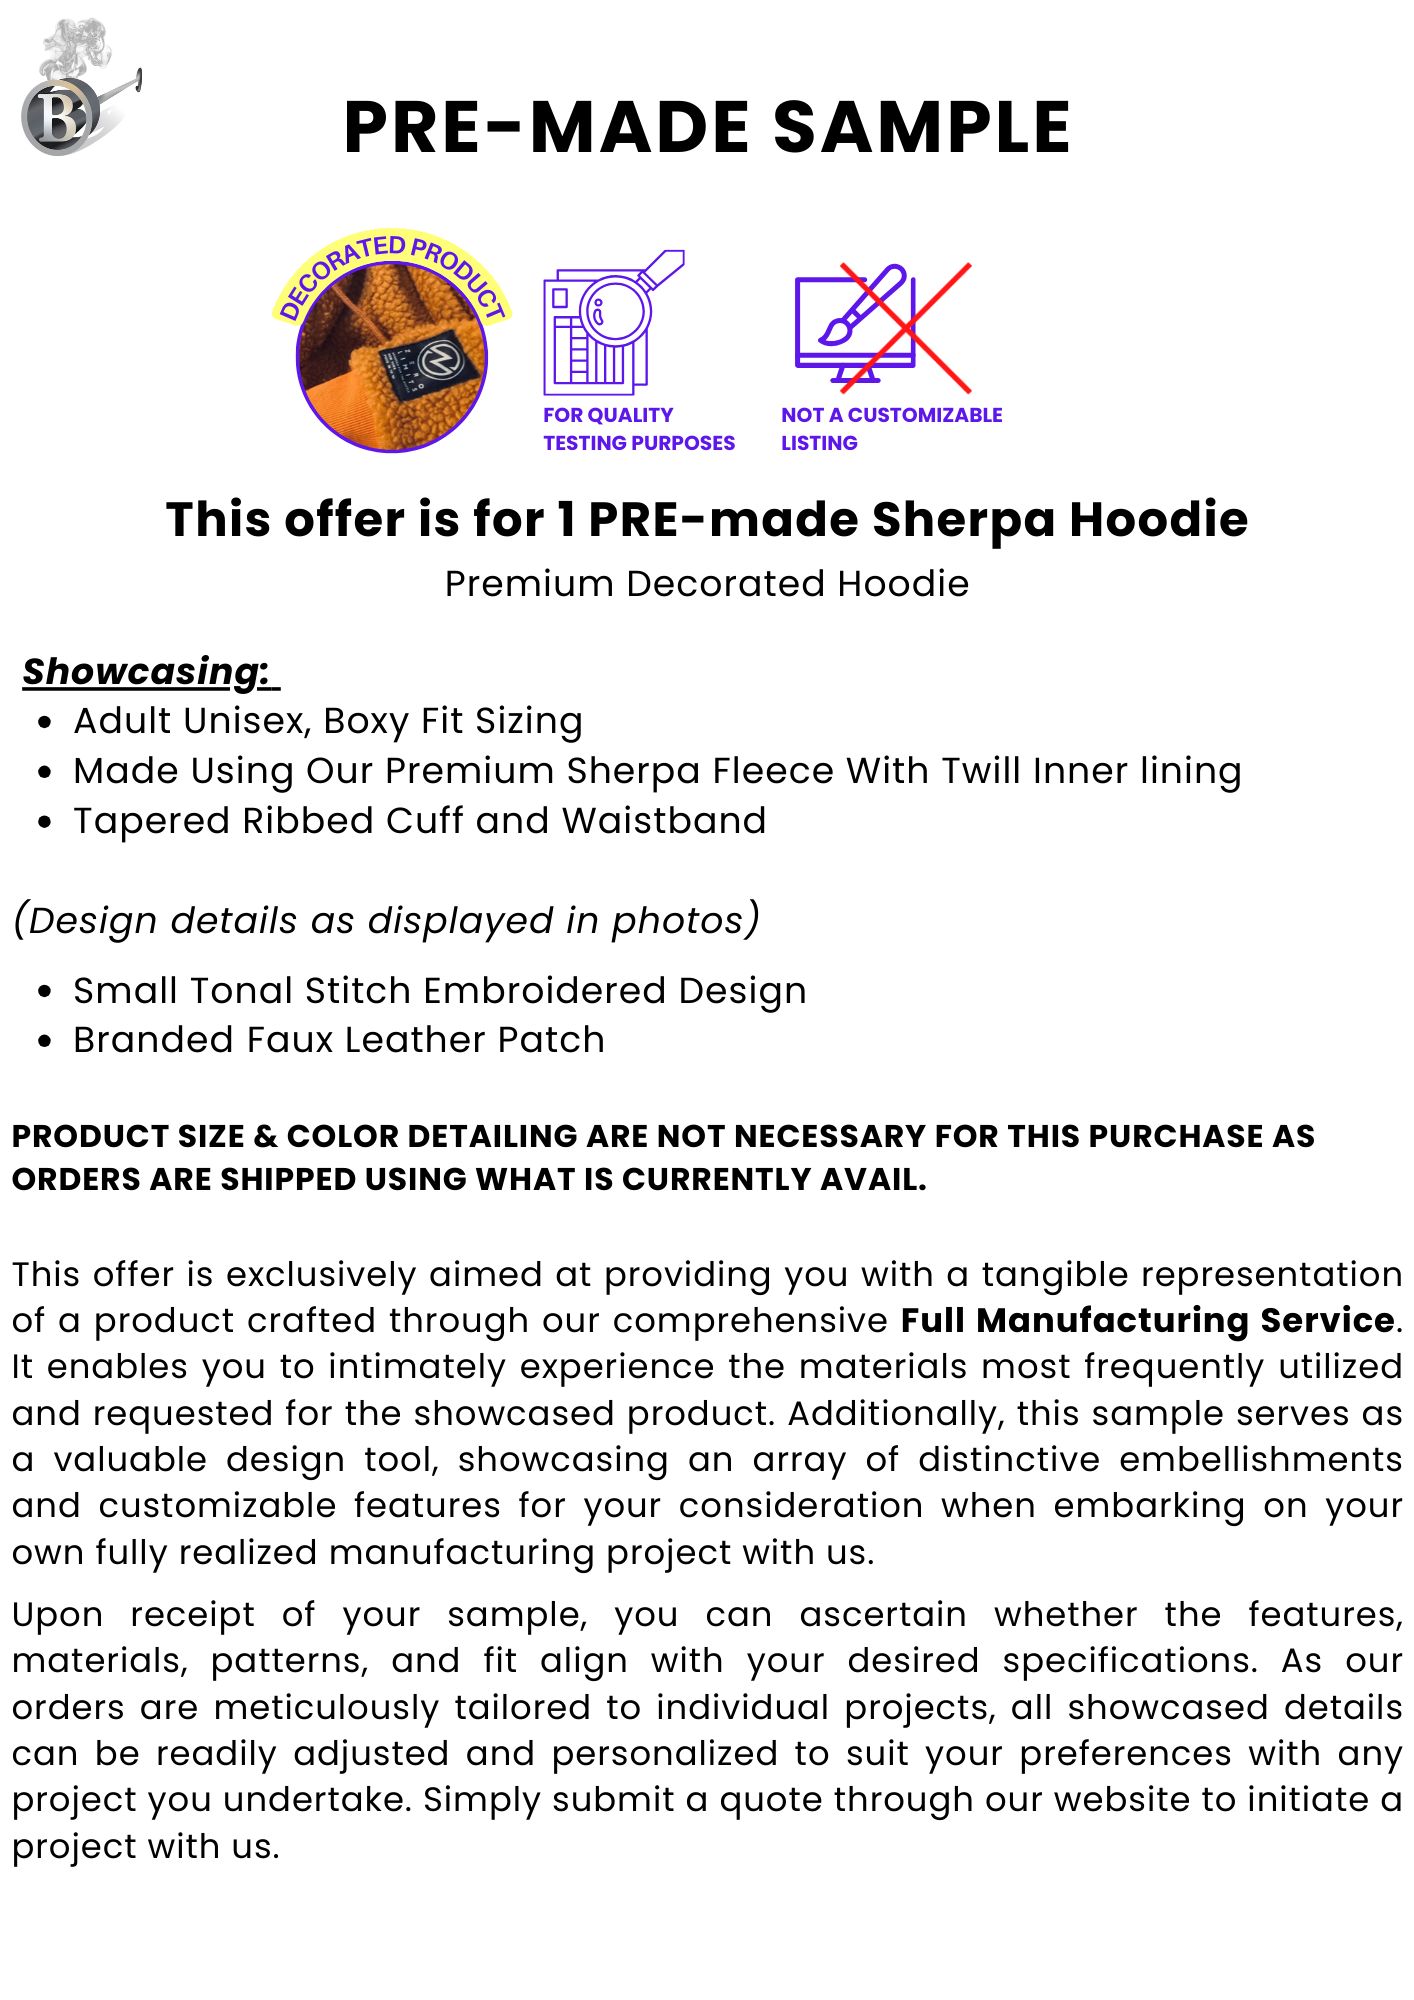 Sherpa Hoodie Sample